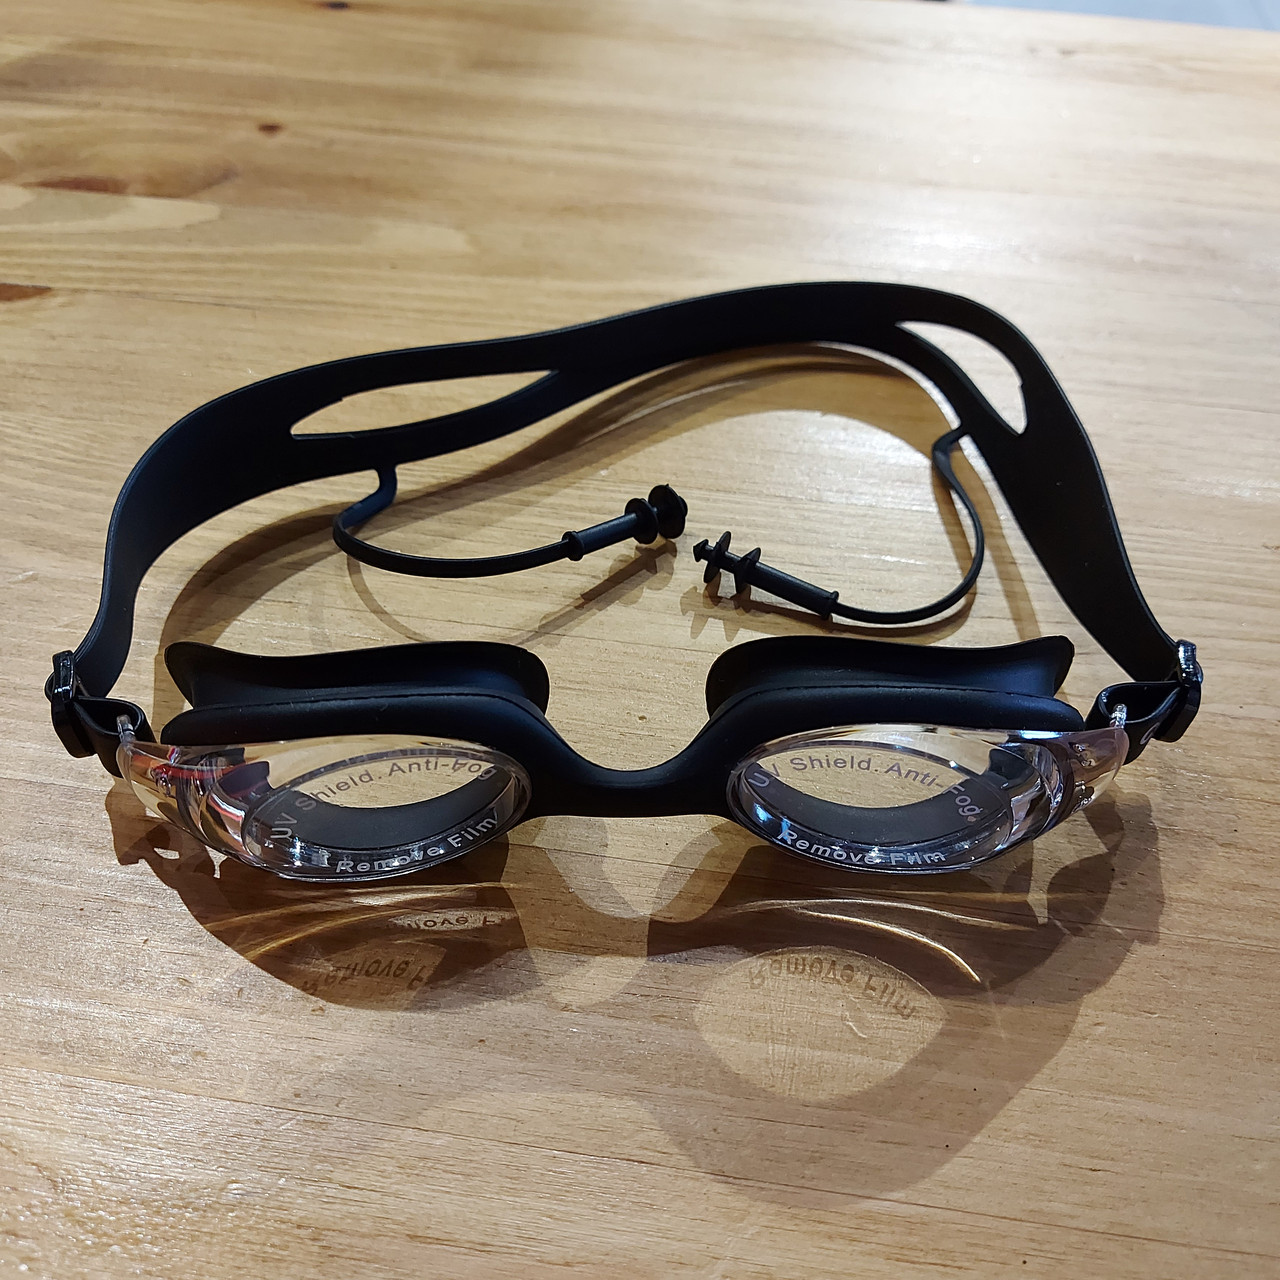 Очки для плавания "Conquest" в футляре. Плавательные очки в бассейн. Unisex. Для купания. Черные.